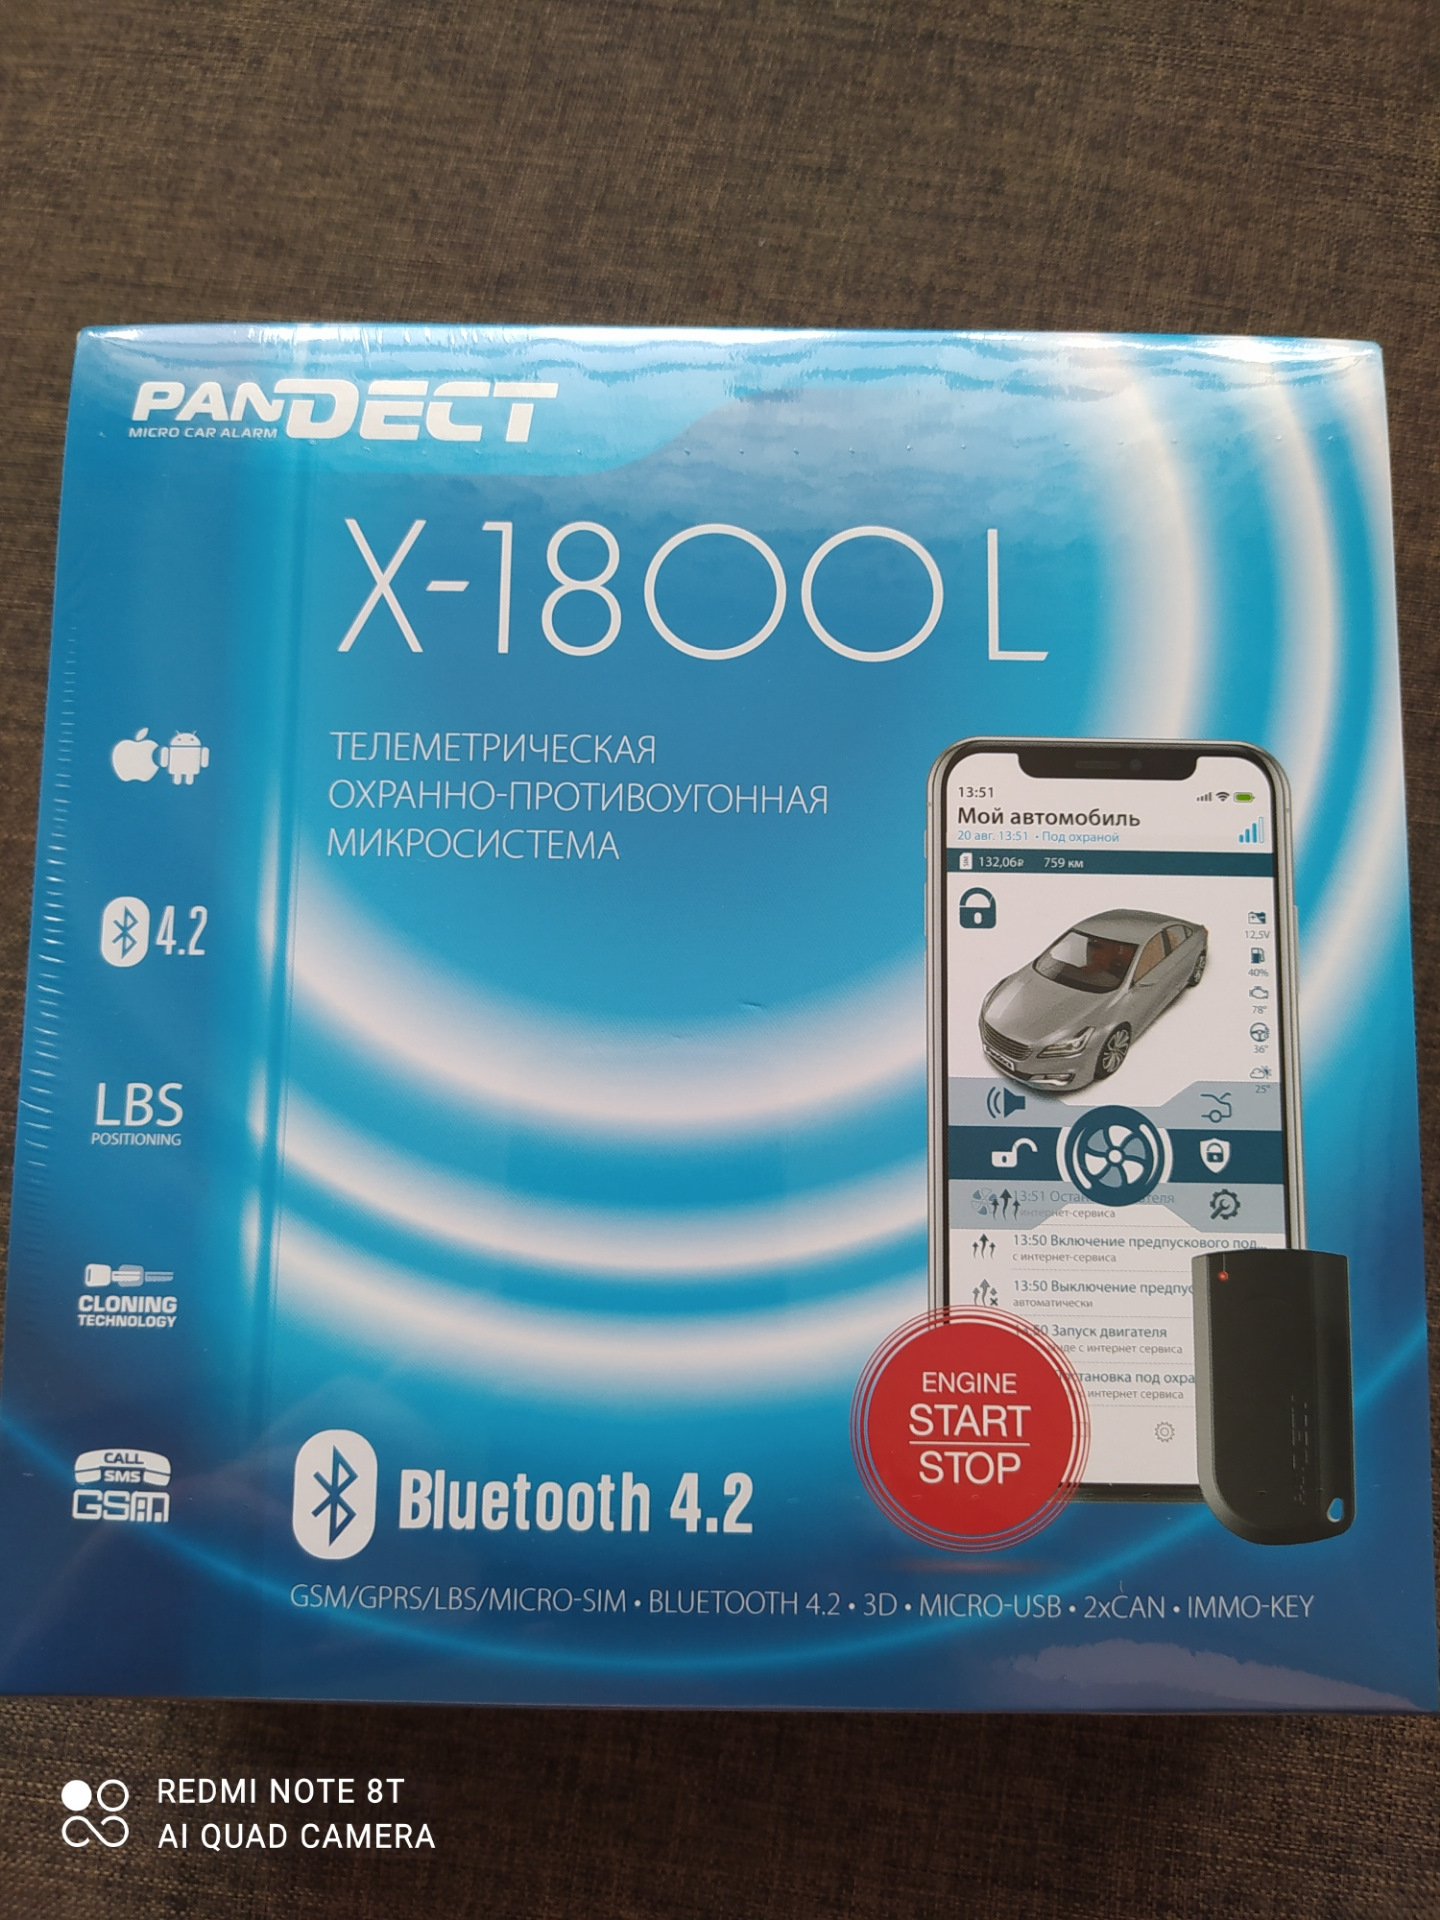 Pandect 1800. Pandora x1800l. Pandect x-1800 l v2. Pandect x-1800l блок. Pandect x 1800l v3 GSM 5.0.